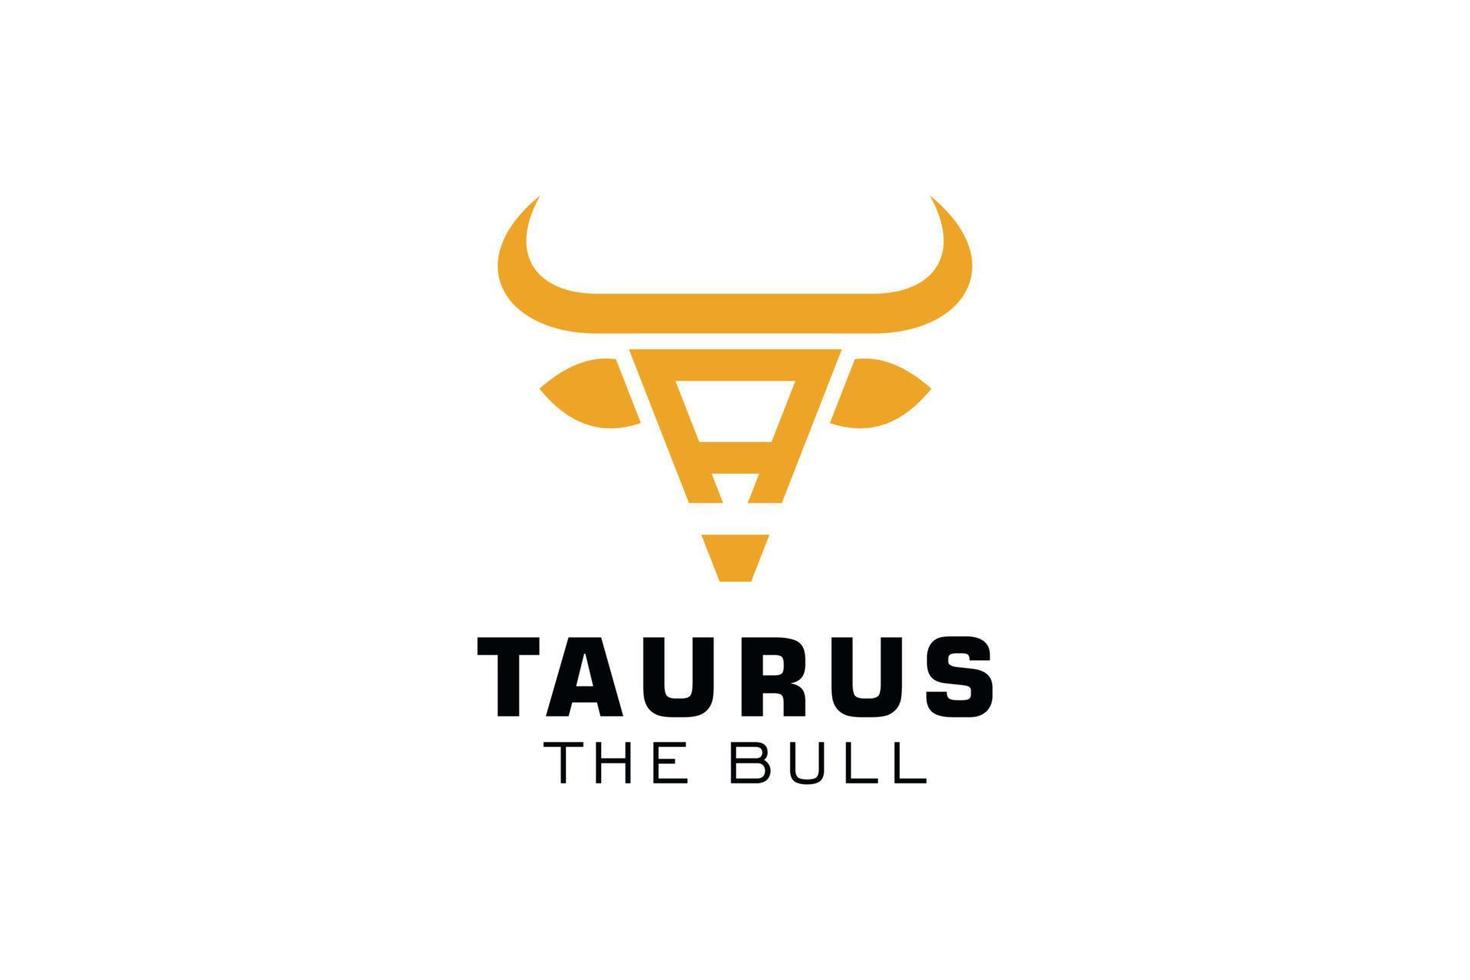 Letter A logo, Bull logo,head bull logo, monogram Logo Design Template Element vector